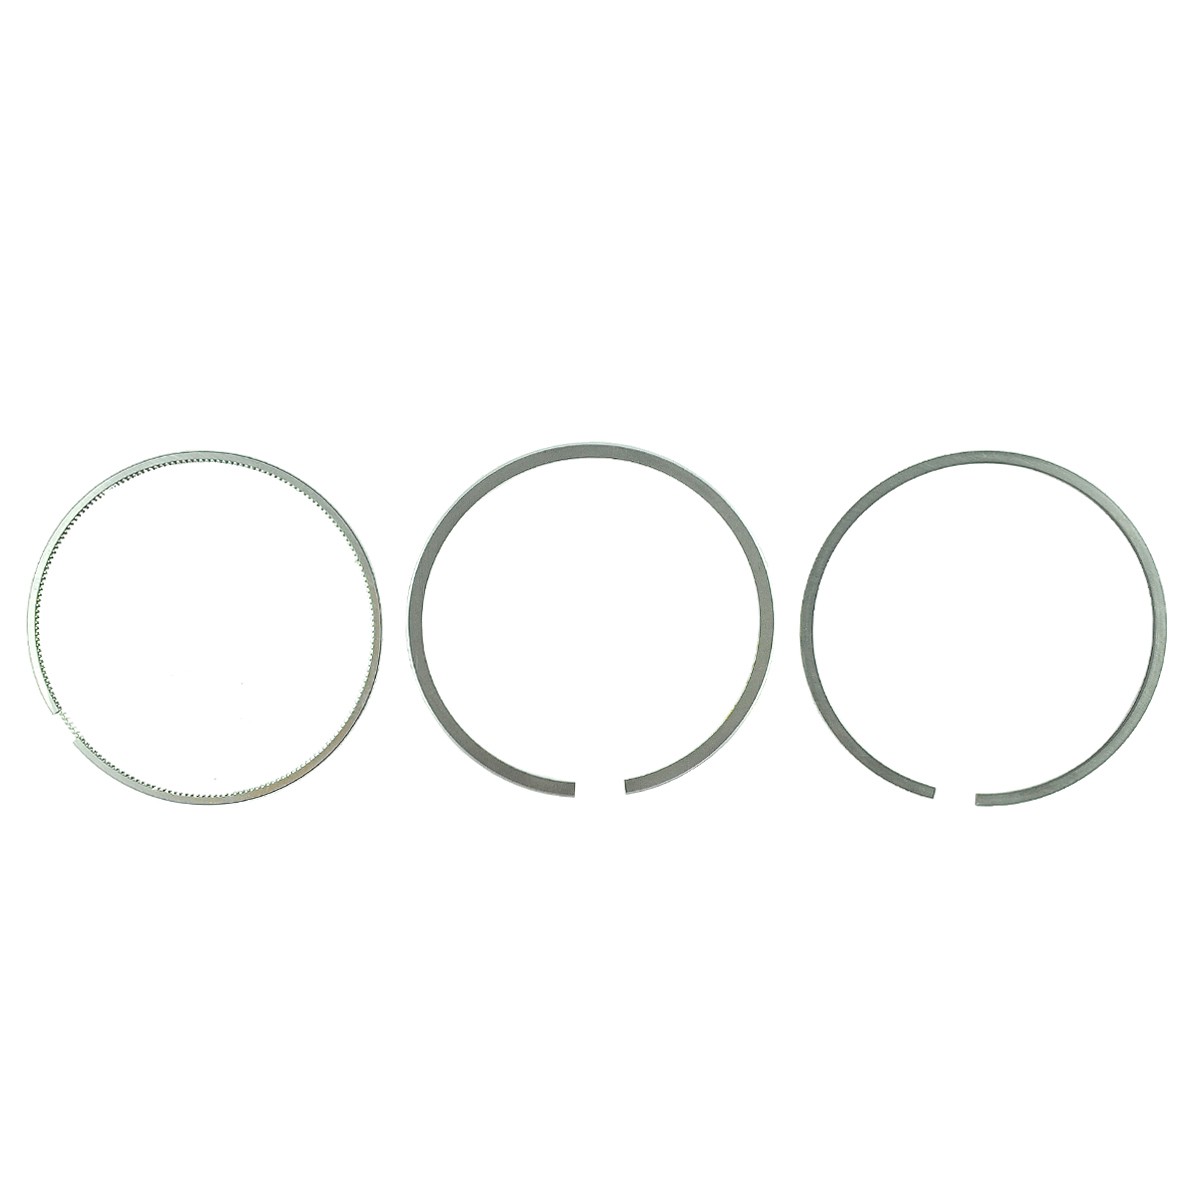 Pístní kroužky / Ø 98 mm / 2,00 x 2,00 x 4,00 mm / Kubota V3300/V3600 / Kubota M8200/M9000 / 1C010-21050 / 6-26-100-74